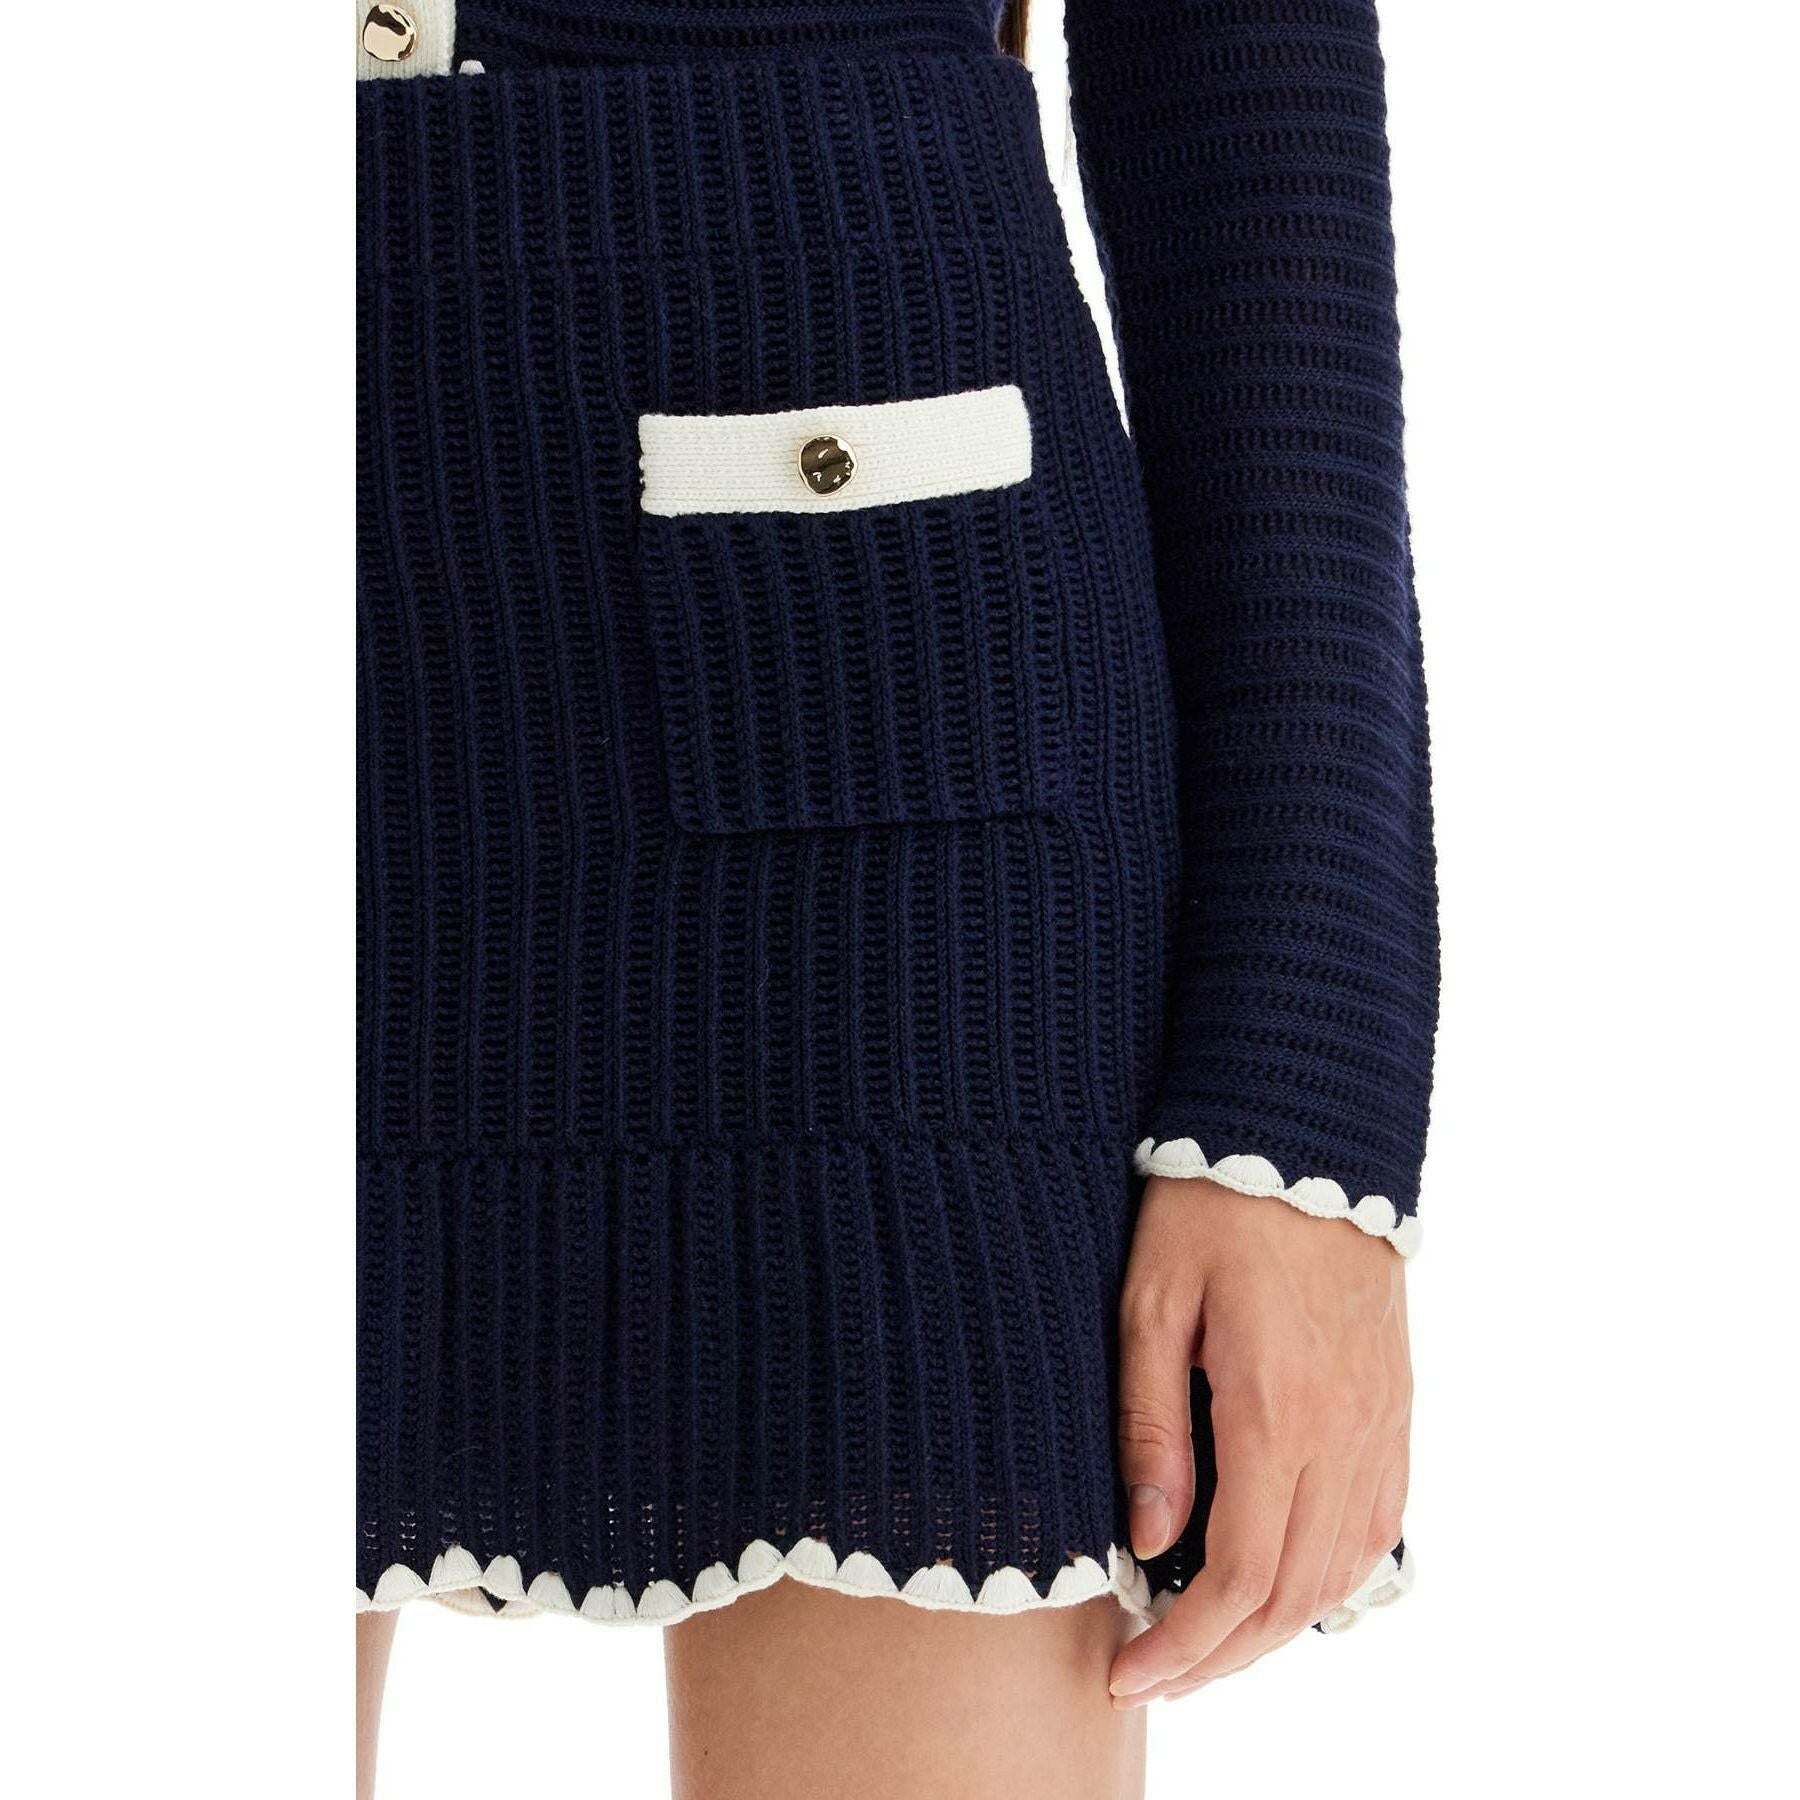 Crochet Contrast Mini Skirt.